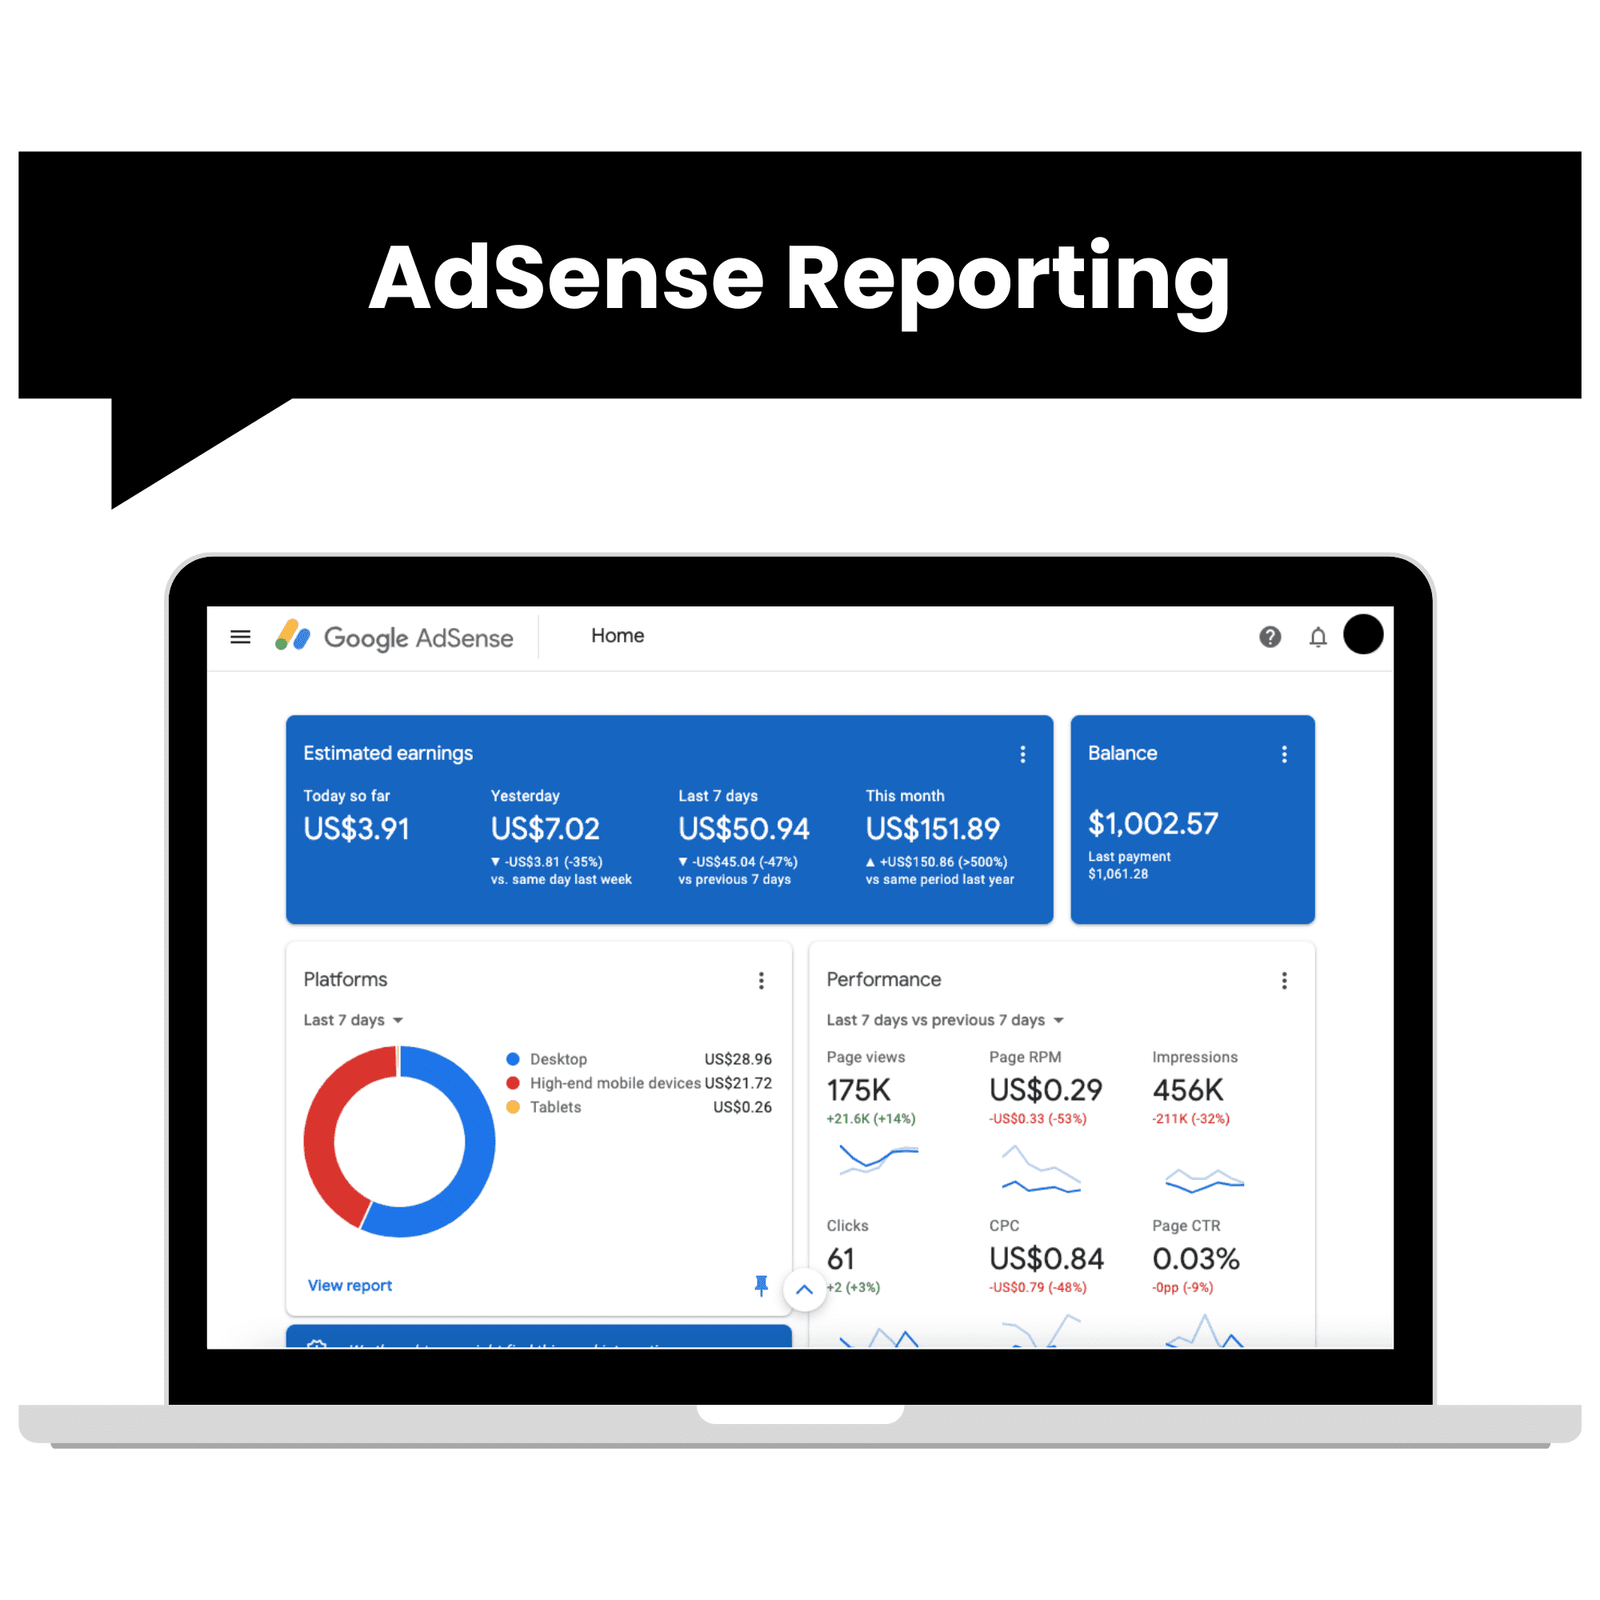 AdSense Reporting